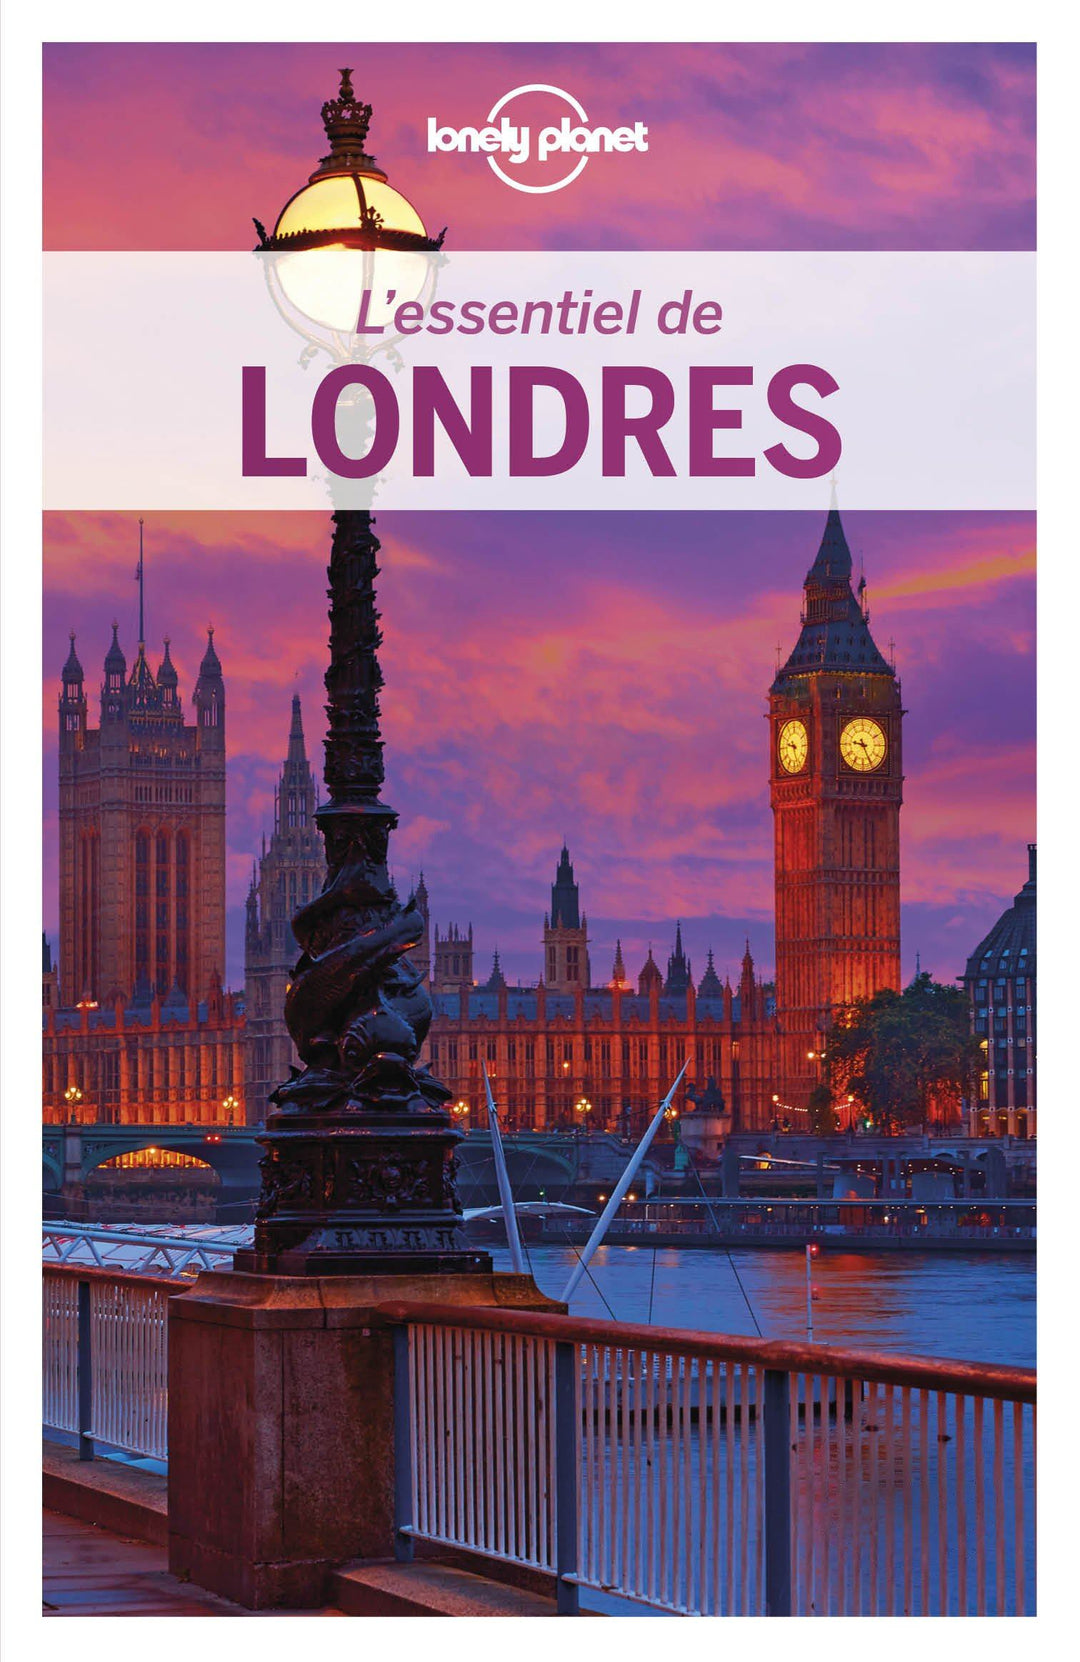 Guide de voyage - L'essentiel de Londres - Édition 2020 | Lonely Planet guide de voyage Lonely Planet 